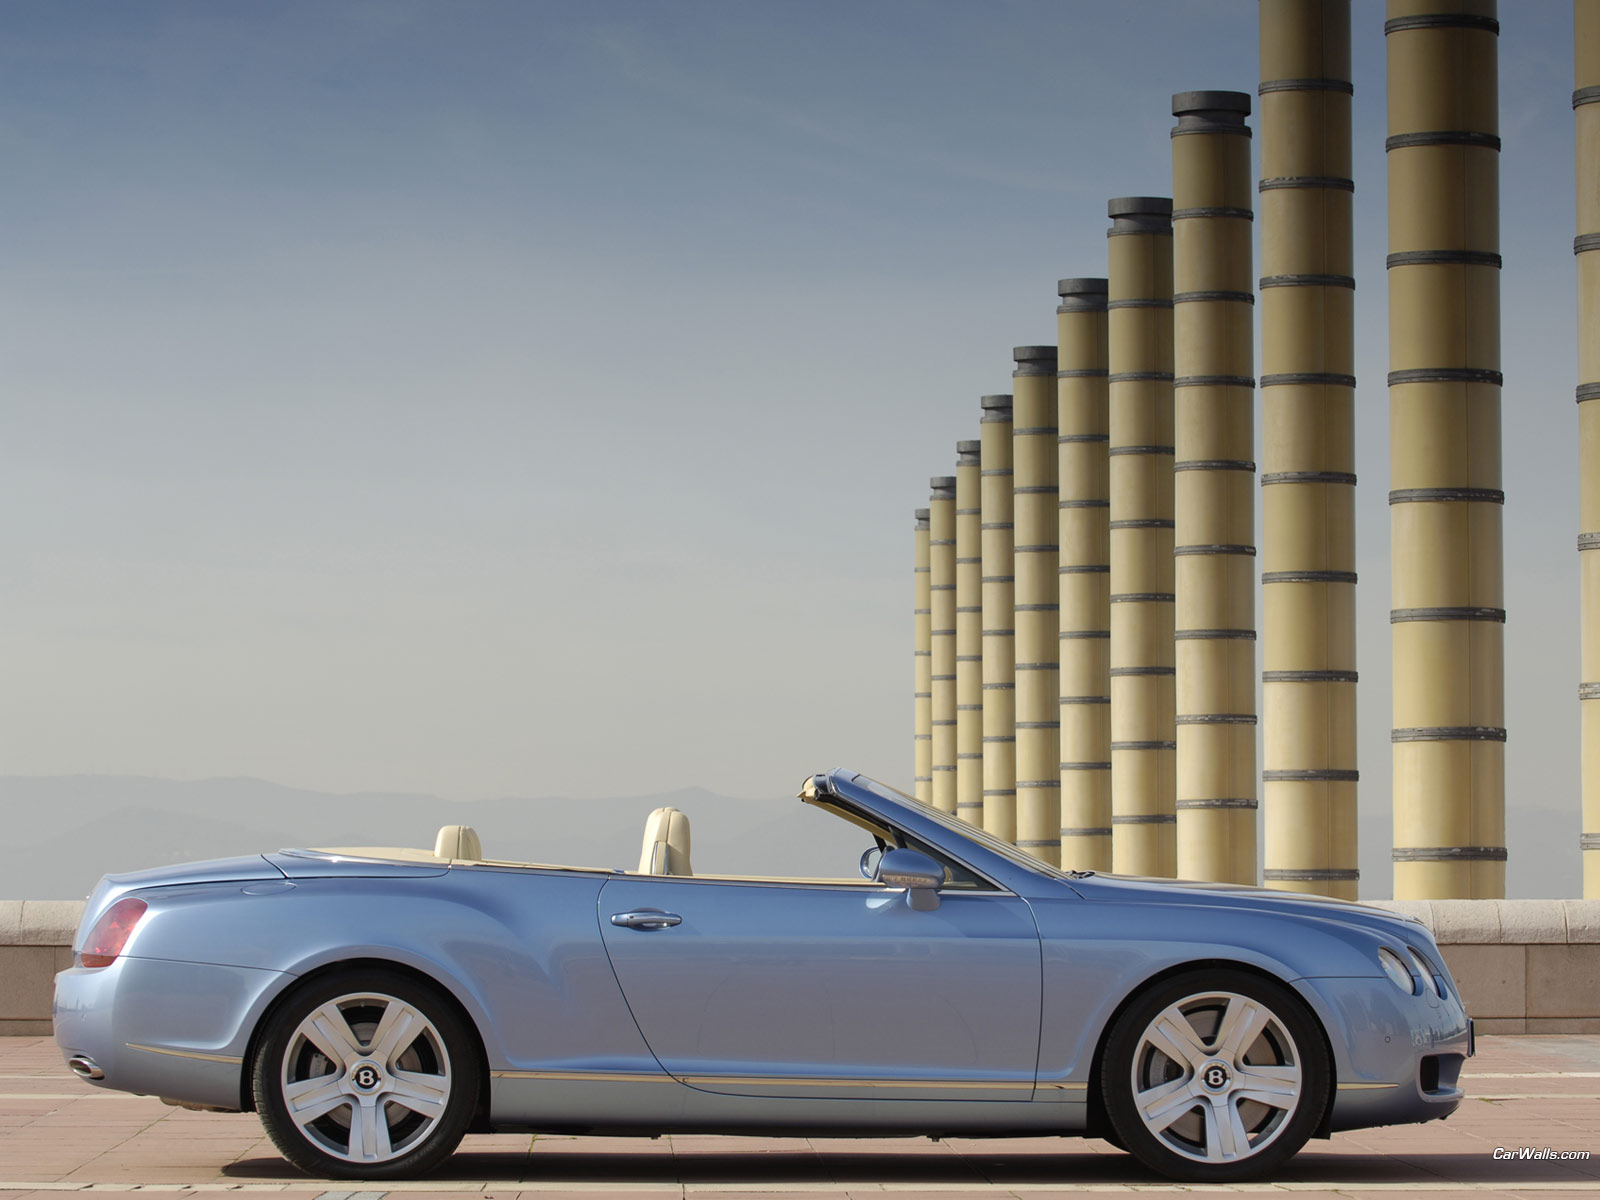 바탕화면용 배경사진 벤틀리 컨티넨탈 GTS (Bentley Continental GTC)